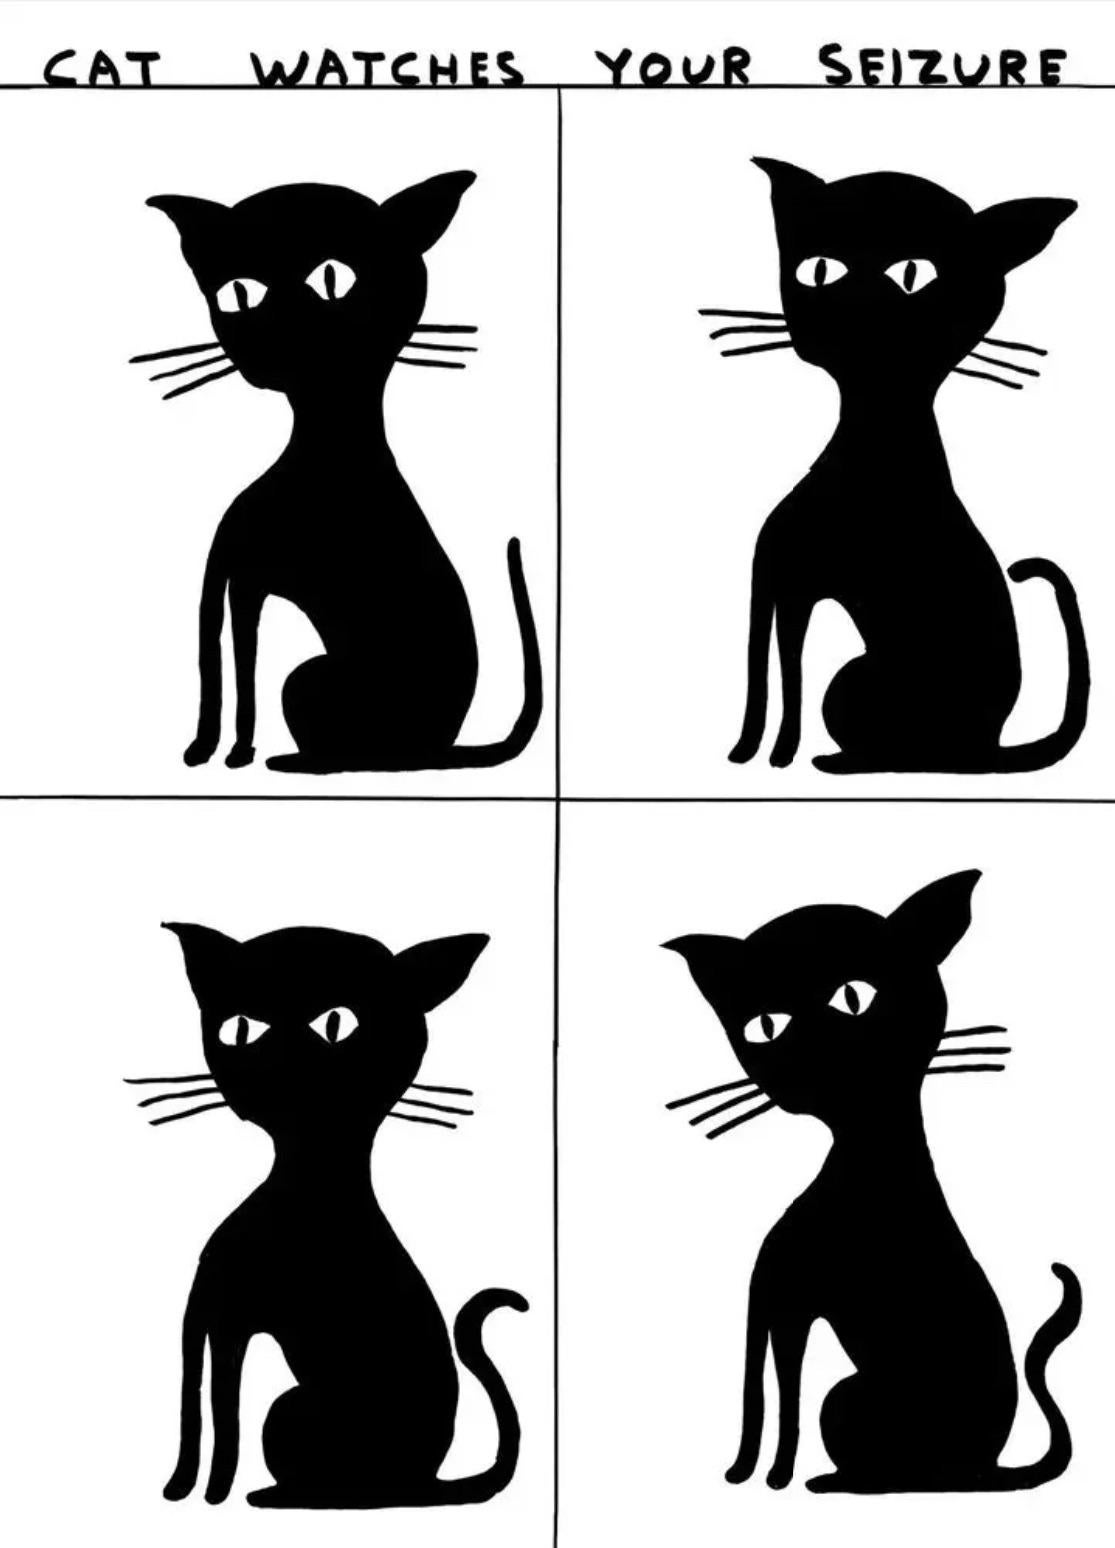 David Shrigley
Katze beobachtet Ihren Anfall, 2023
Offsetlithografie Gedruckt auf 200g Munken Lynx
27 3/5 × 19 7/10 Zoll  70 × 50 cm
Auflage von 350